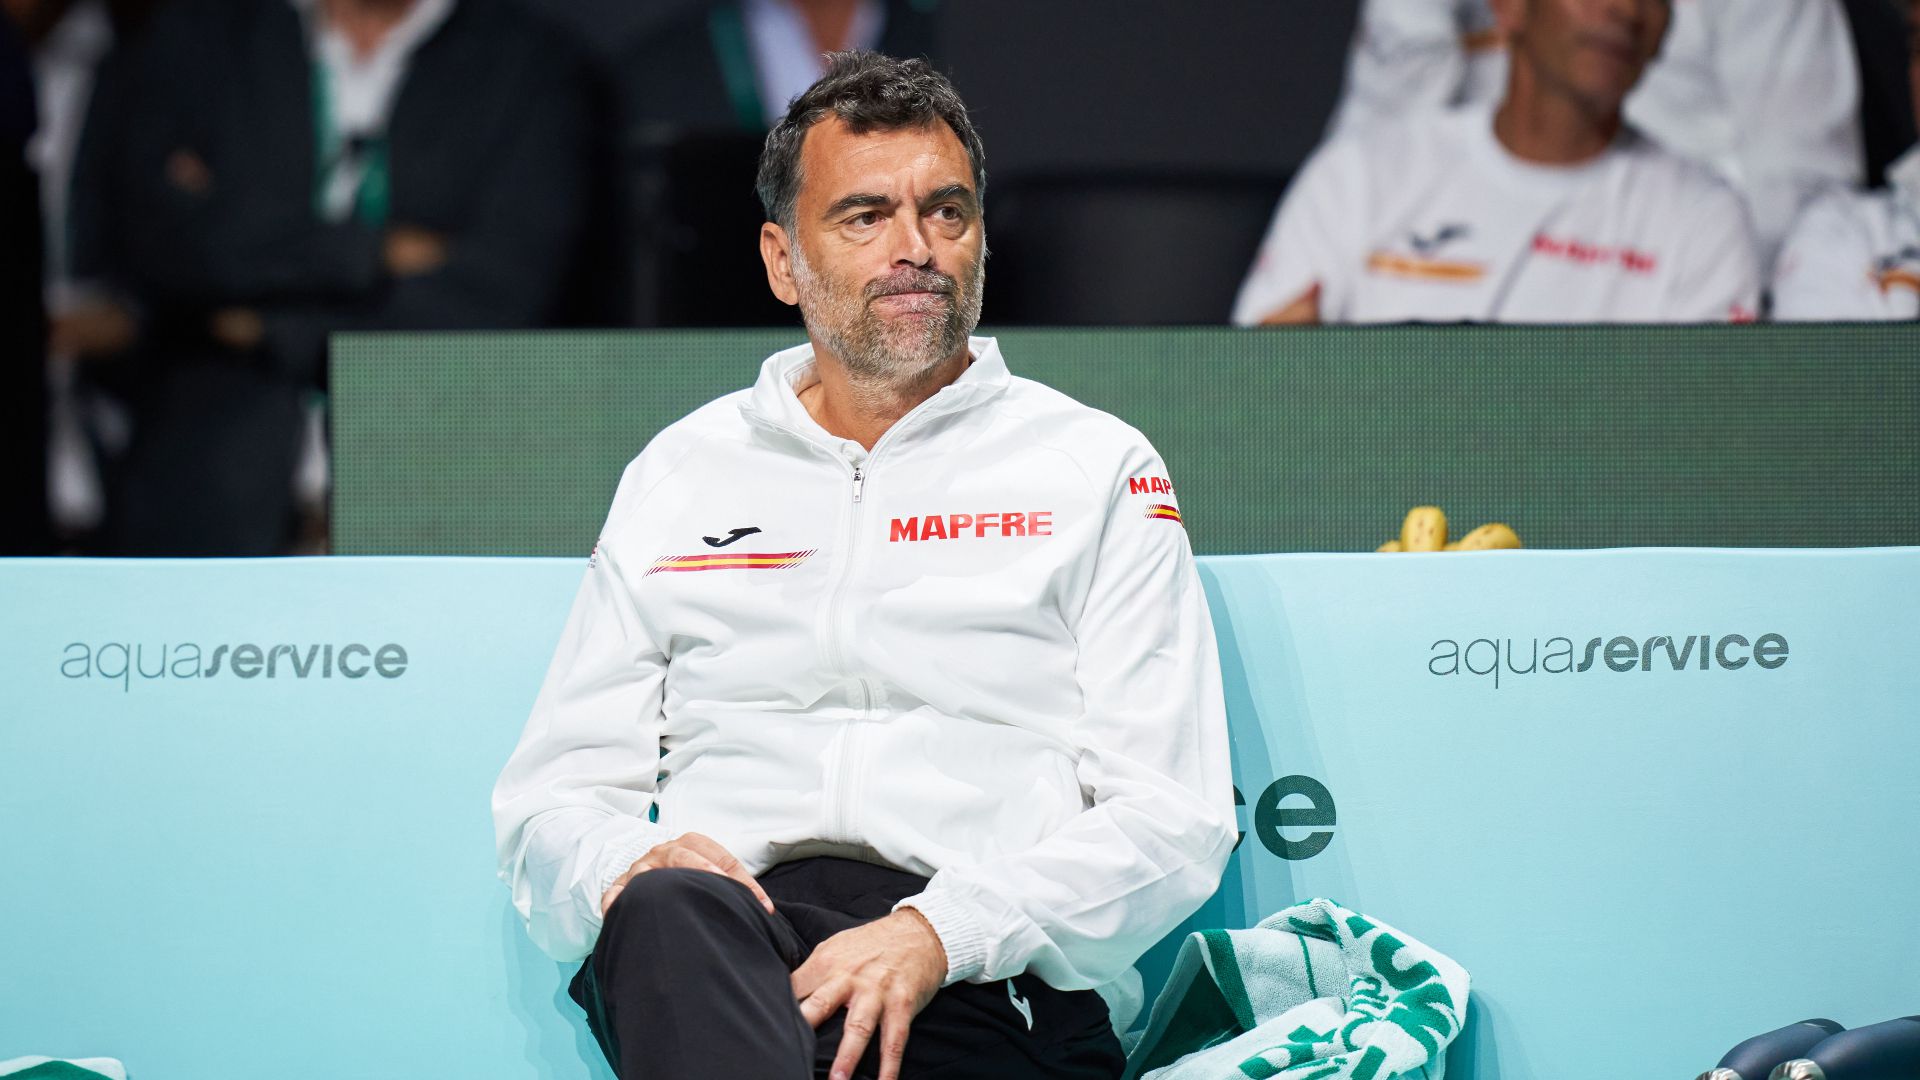 Már nem Bruguera a spanyol kapitány a korai Davis-kupa-búcsú után